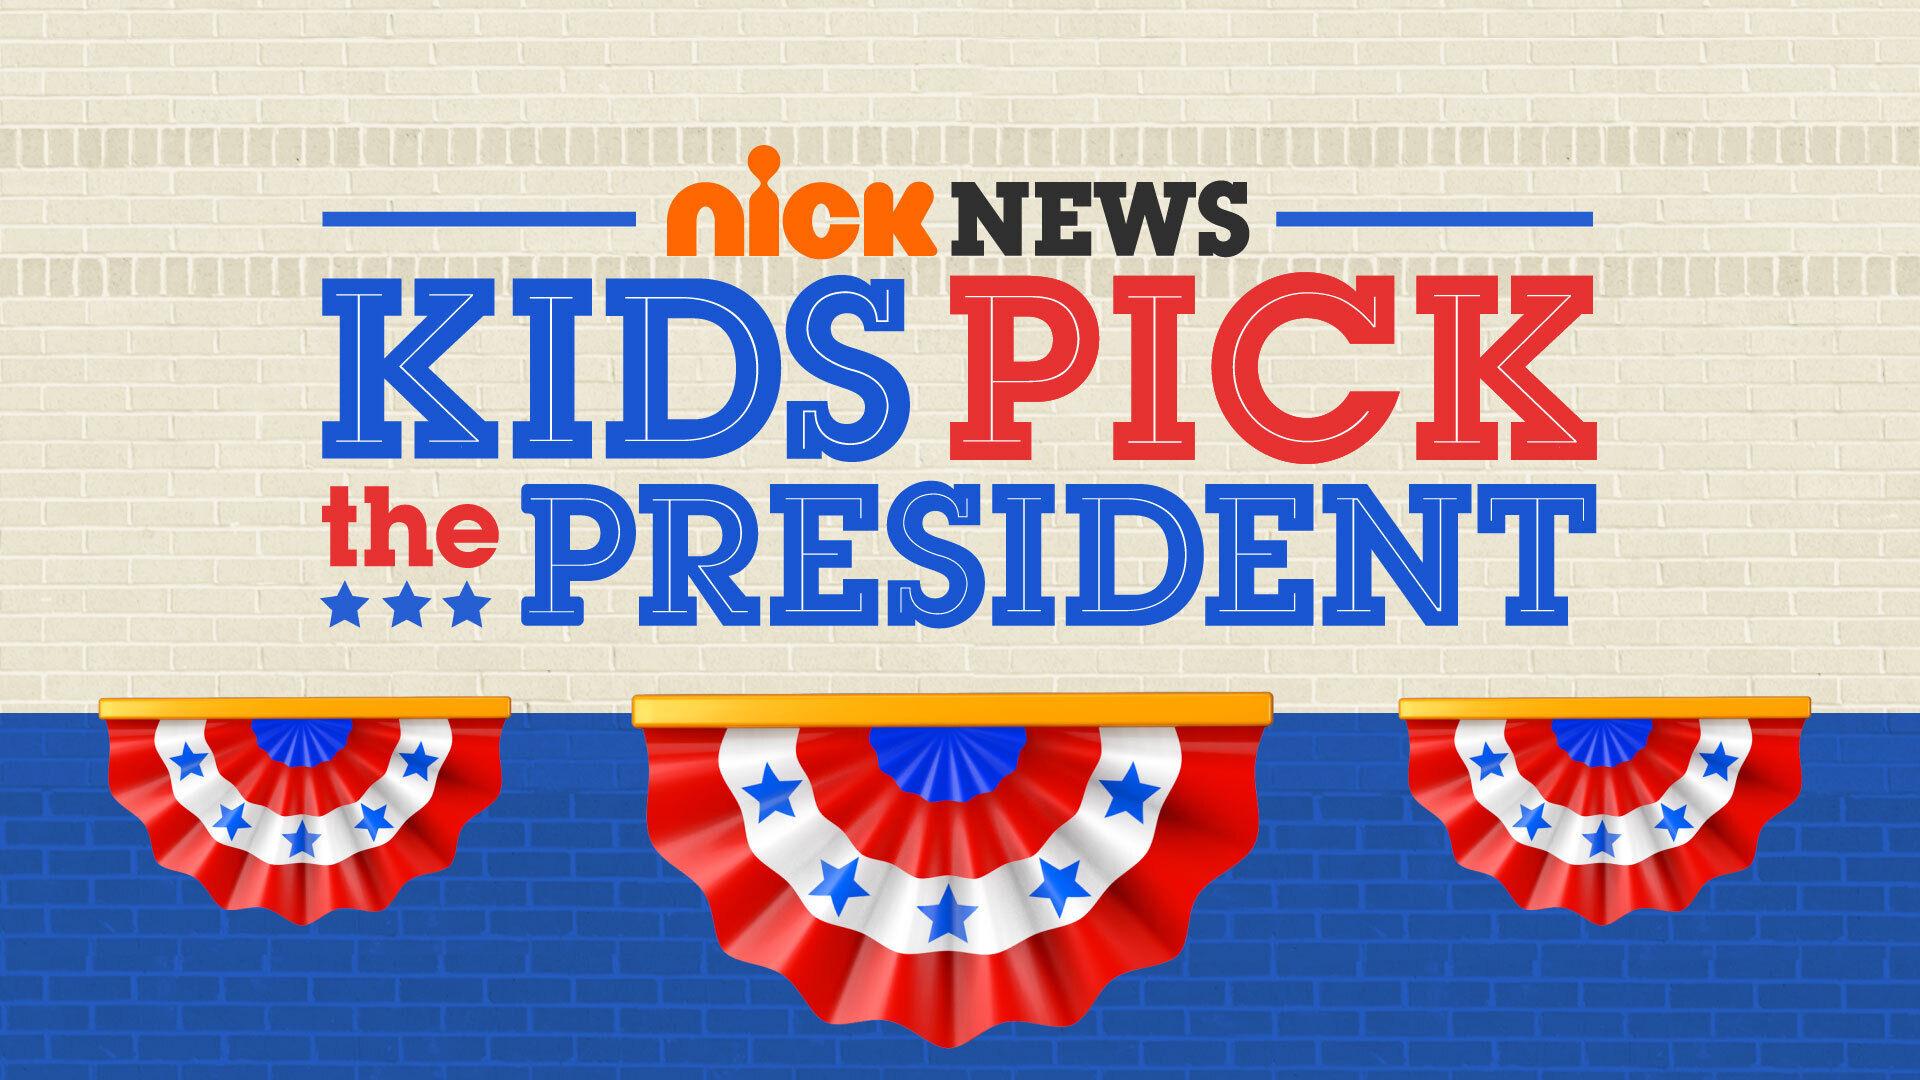 Joseph R. Biden Named Winner of Nickelodeon's Kids Pick the President “Kids' Vote”